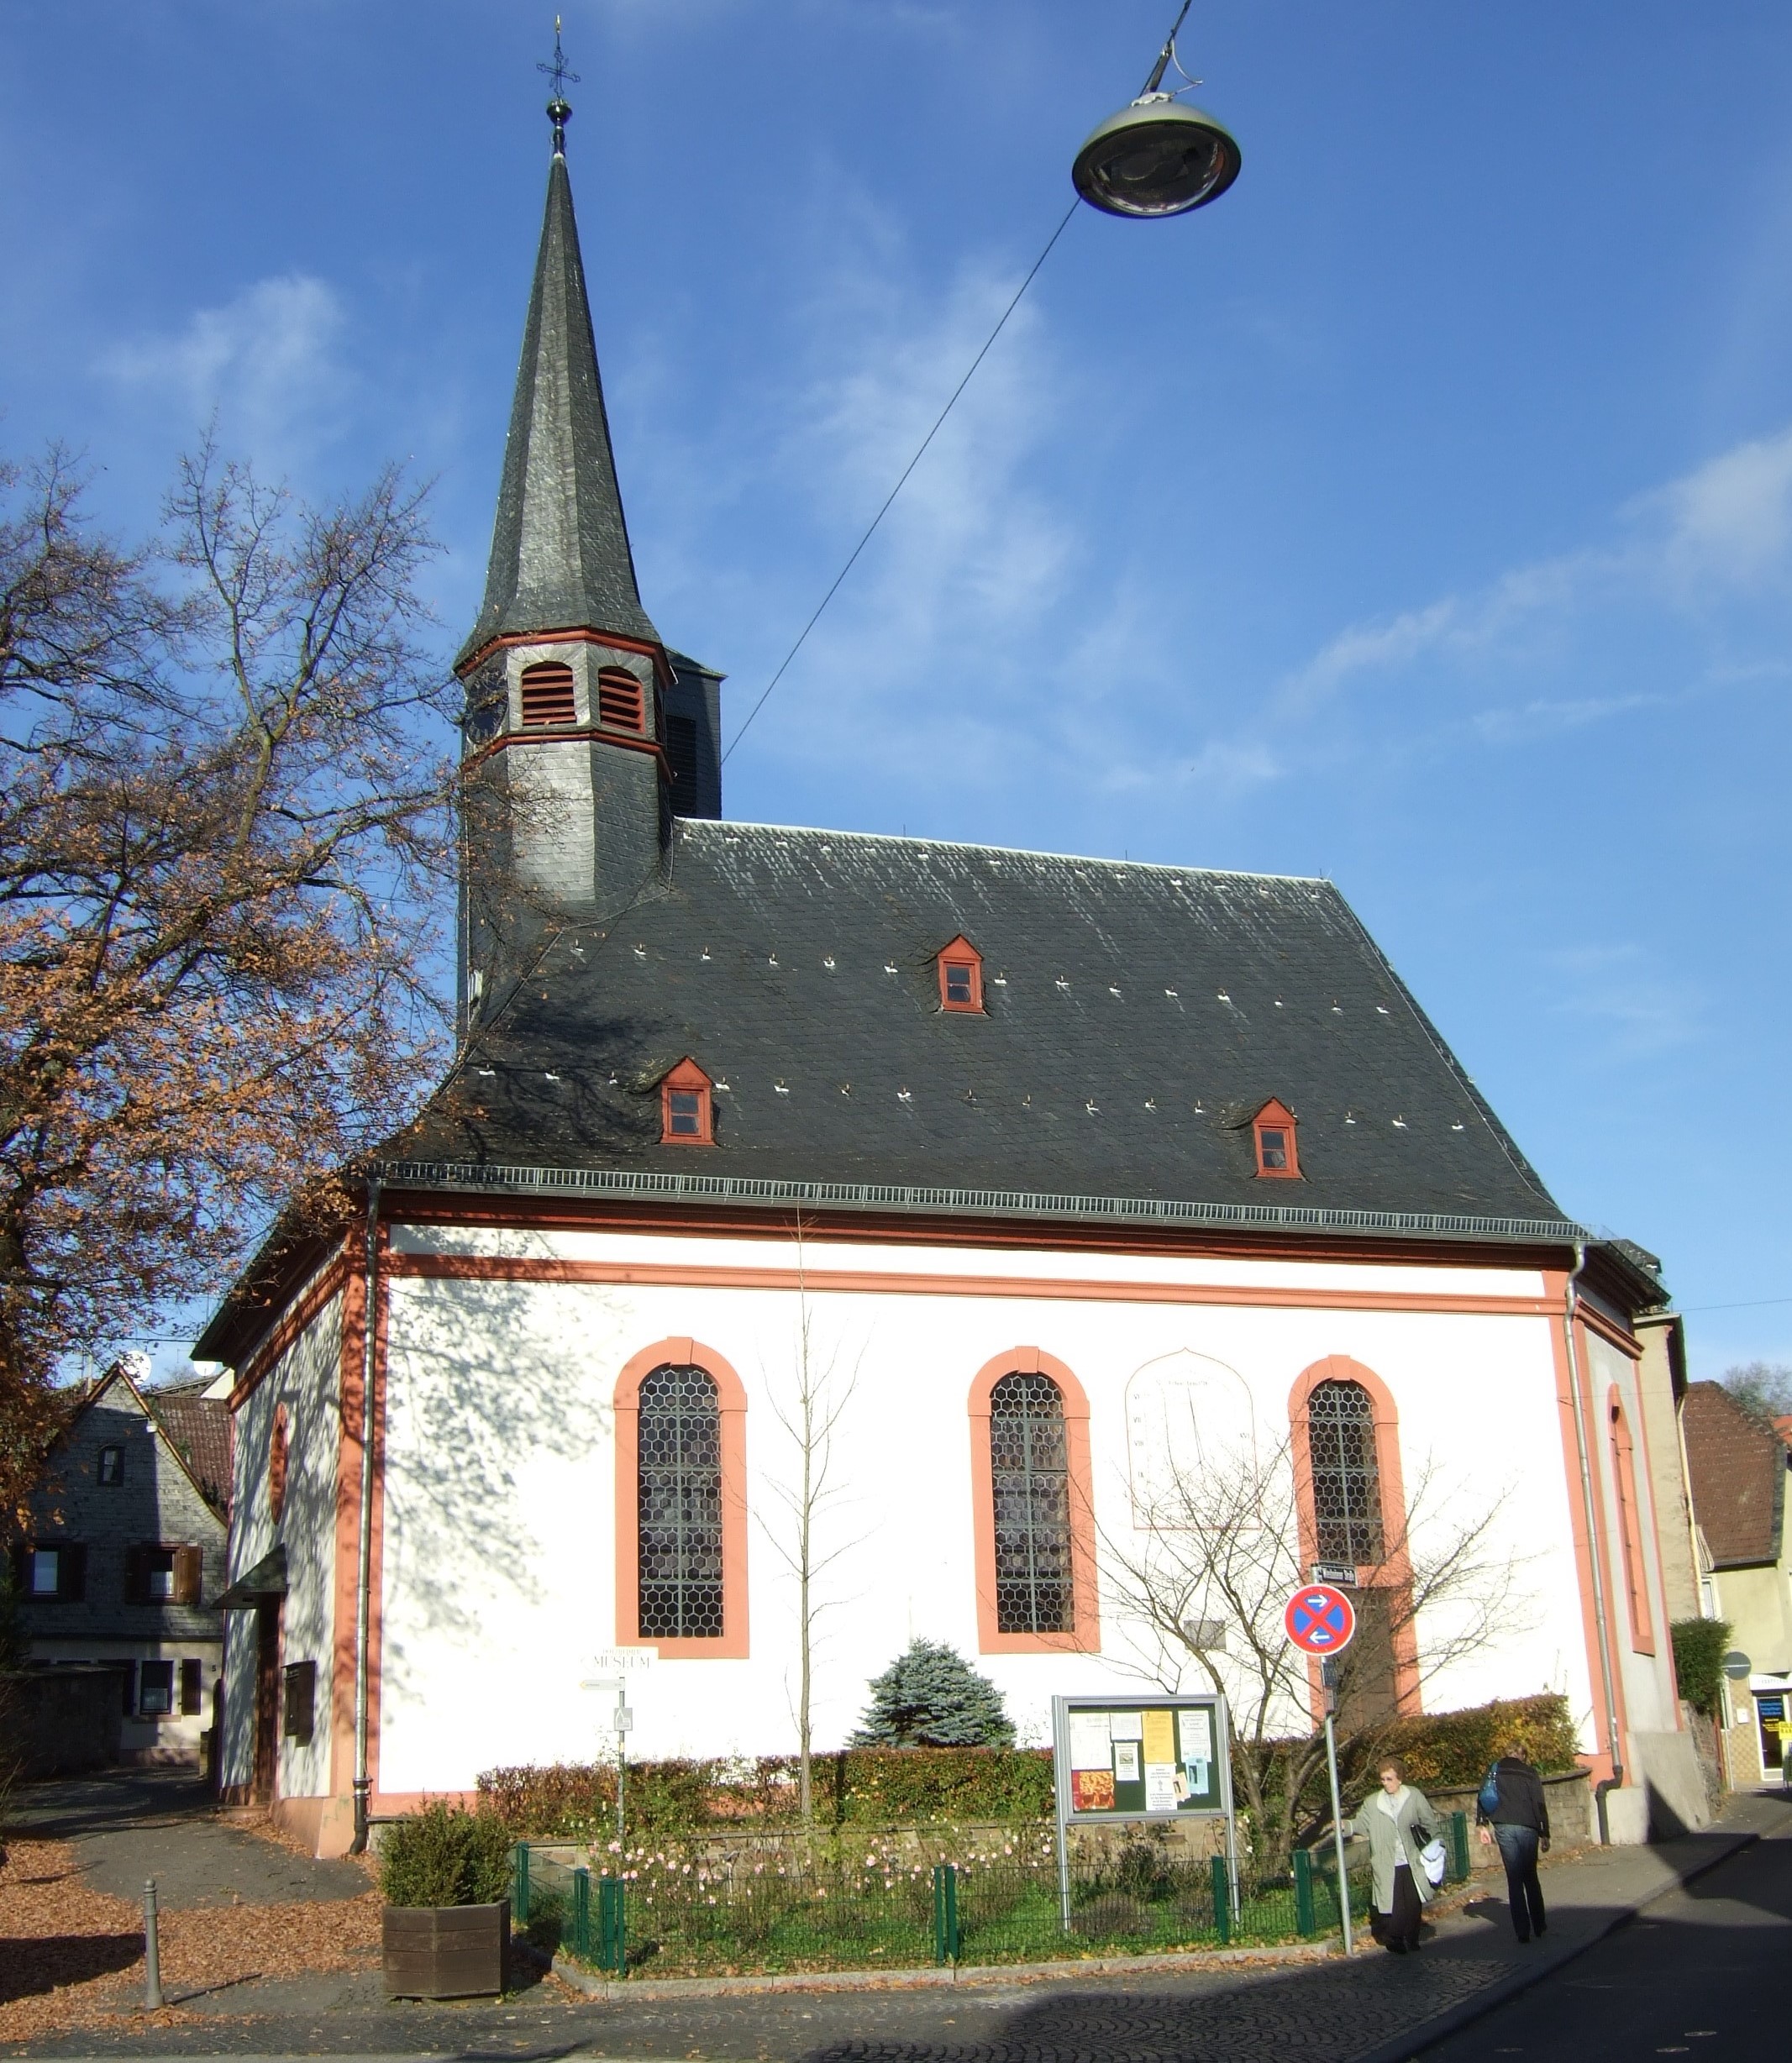 Evangelische Kirche Dotzheim - Evangelische Kirchengemeinde Wiesbaden-Dotzheim, Römergasse 1 in Wiesbaden